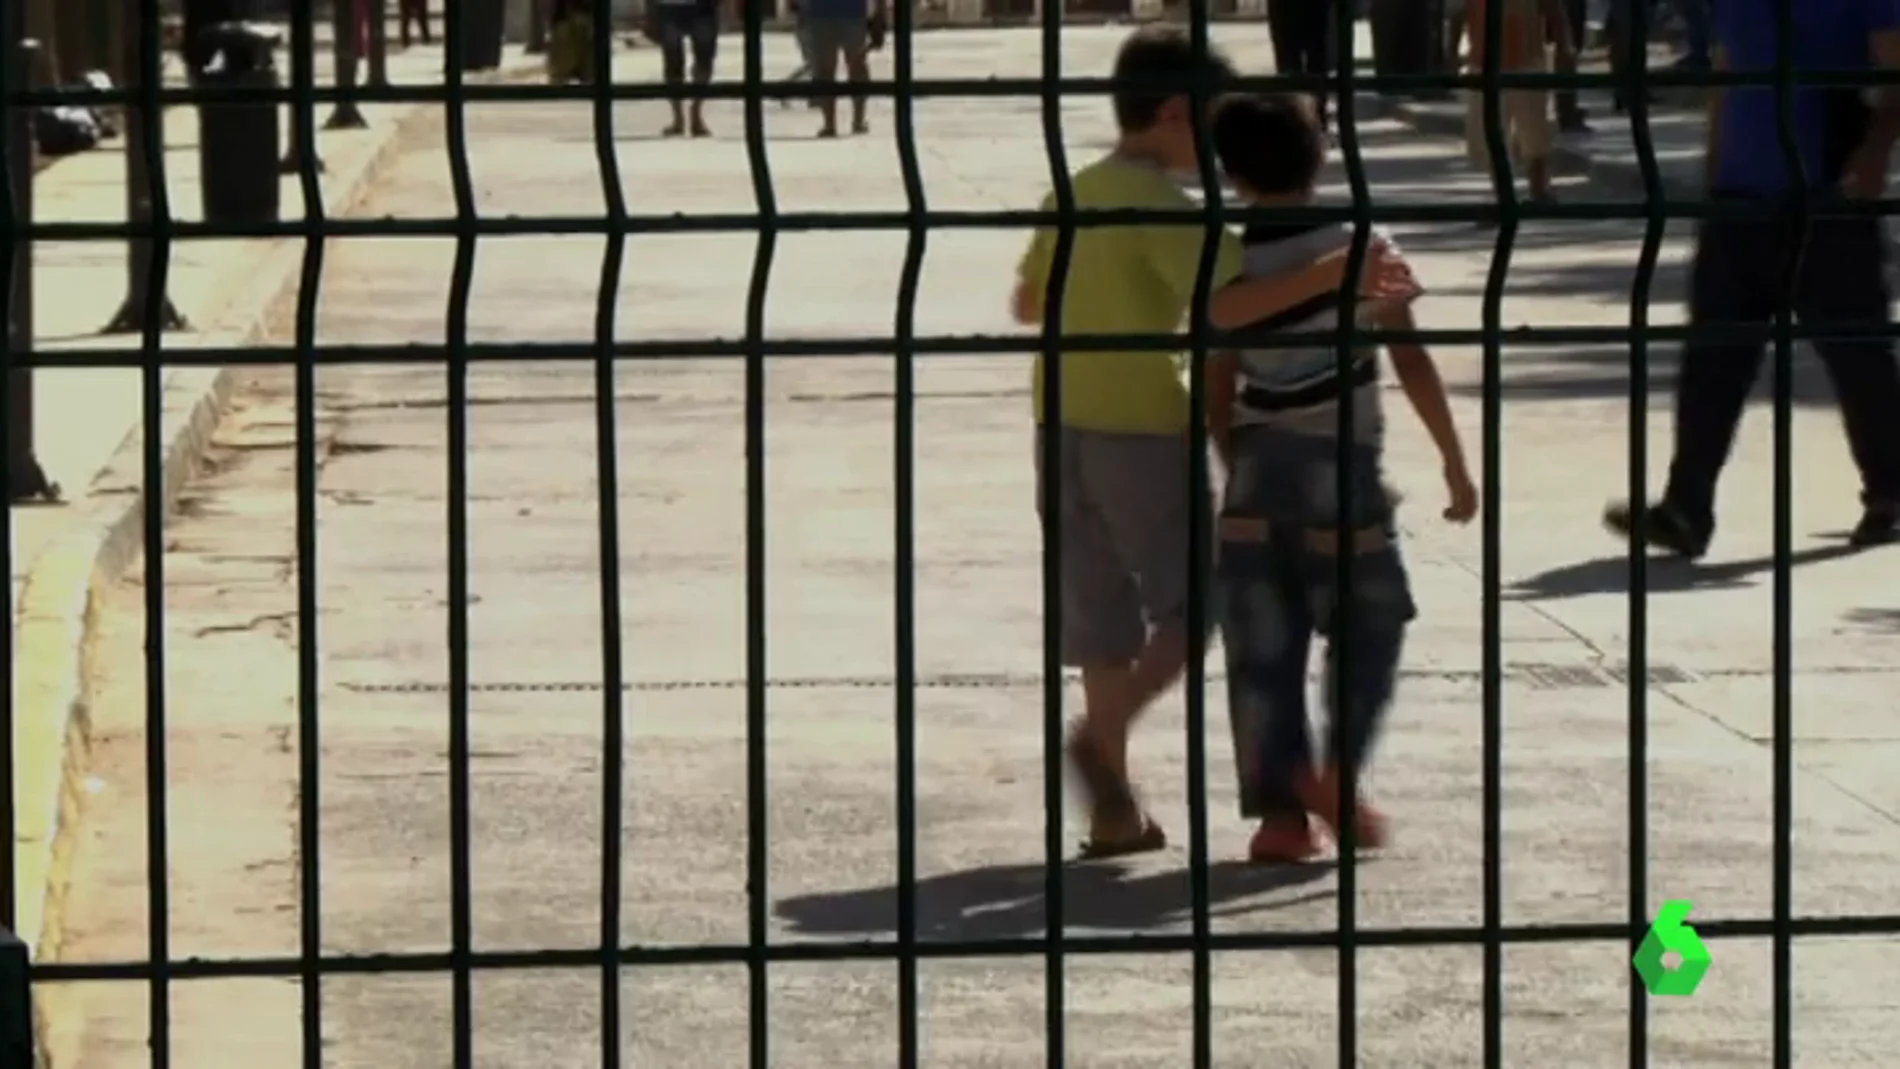 En España hay 4.000 inmigrantes menores de edad no acompañados